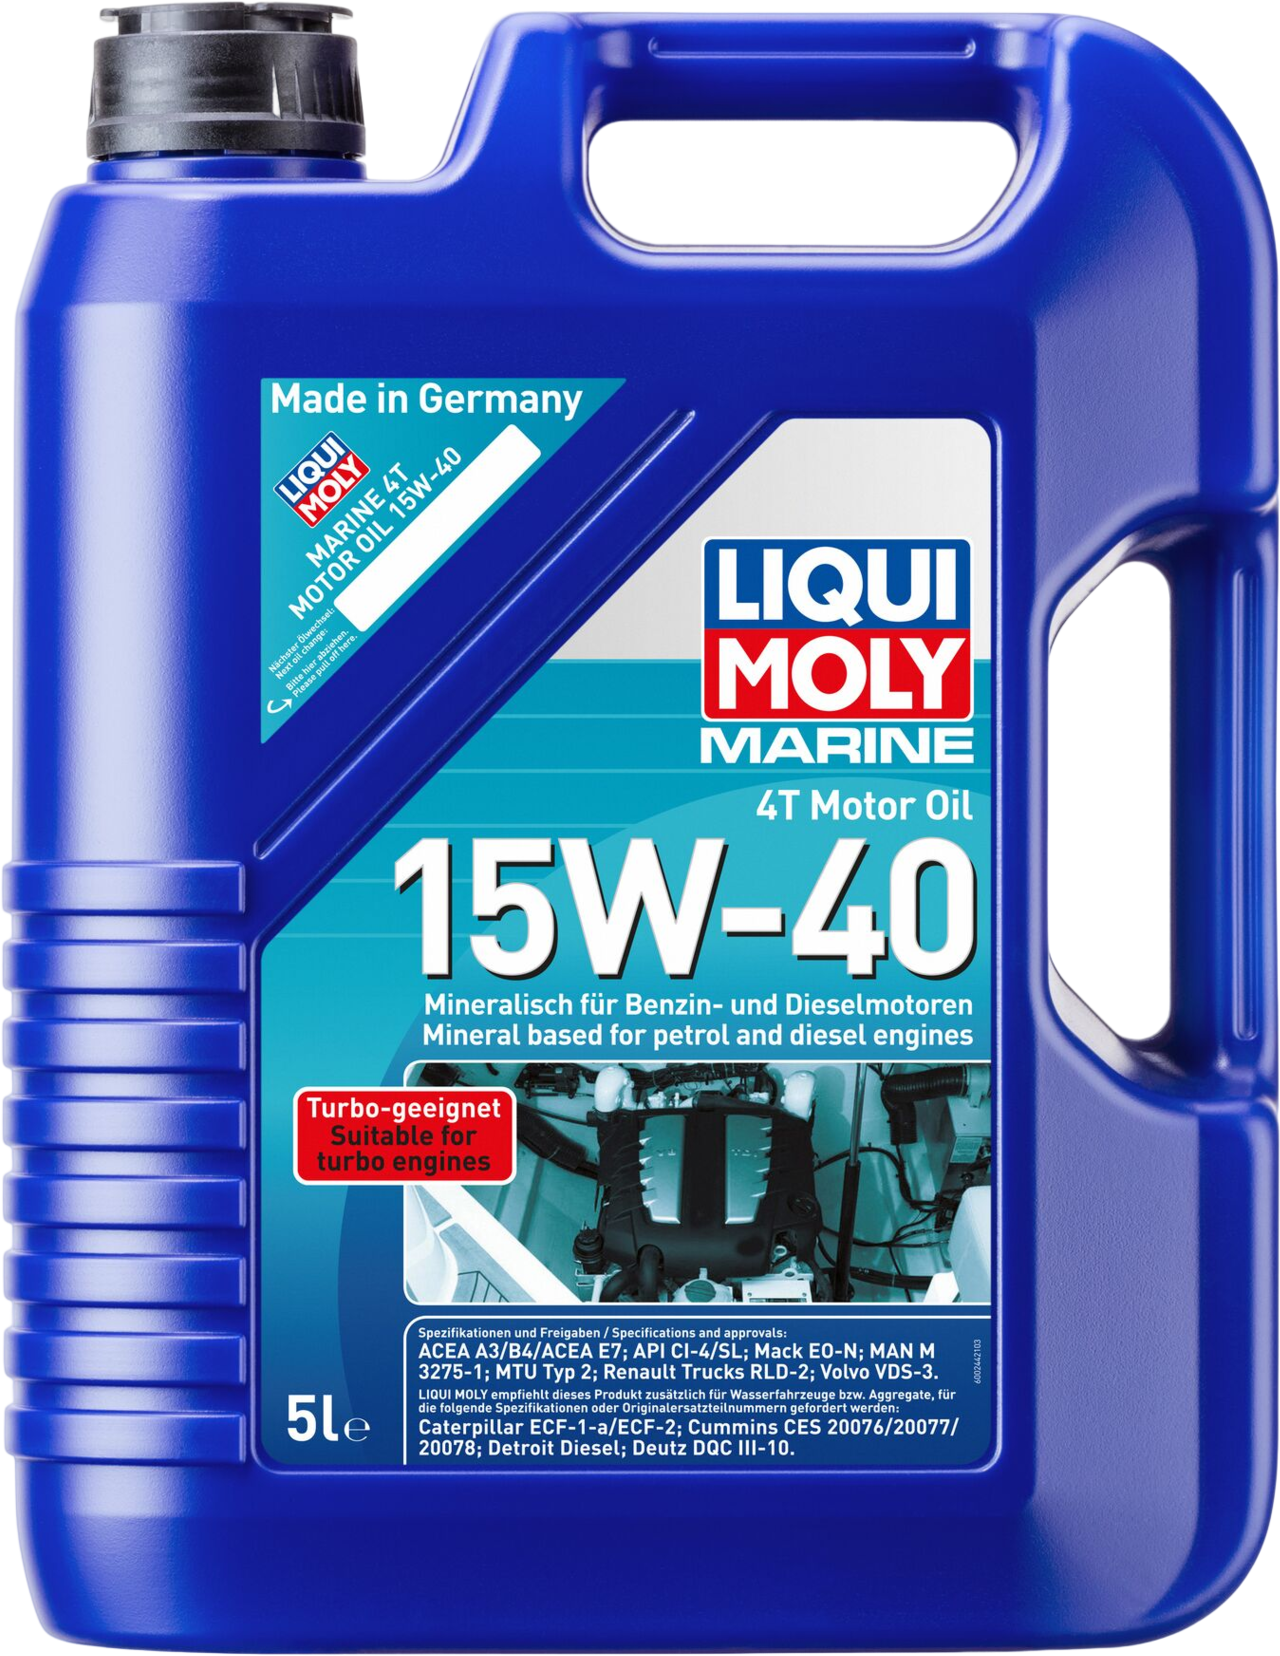 Liqui Moly Marine 4T Motor Oil 15W-40, 4 x 5 lt detail 2